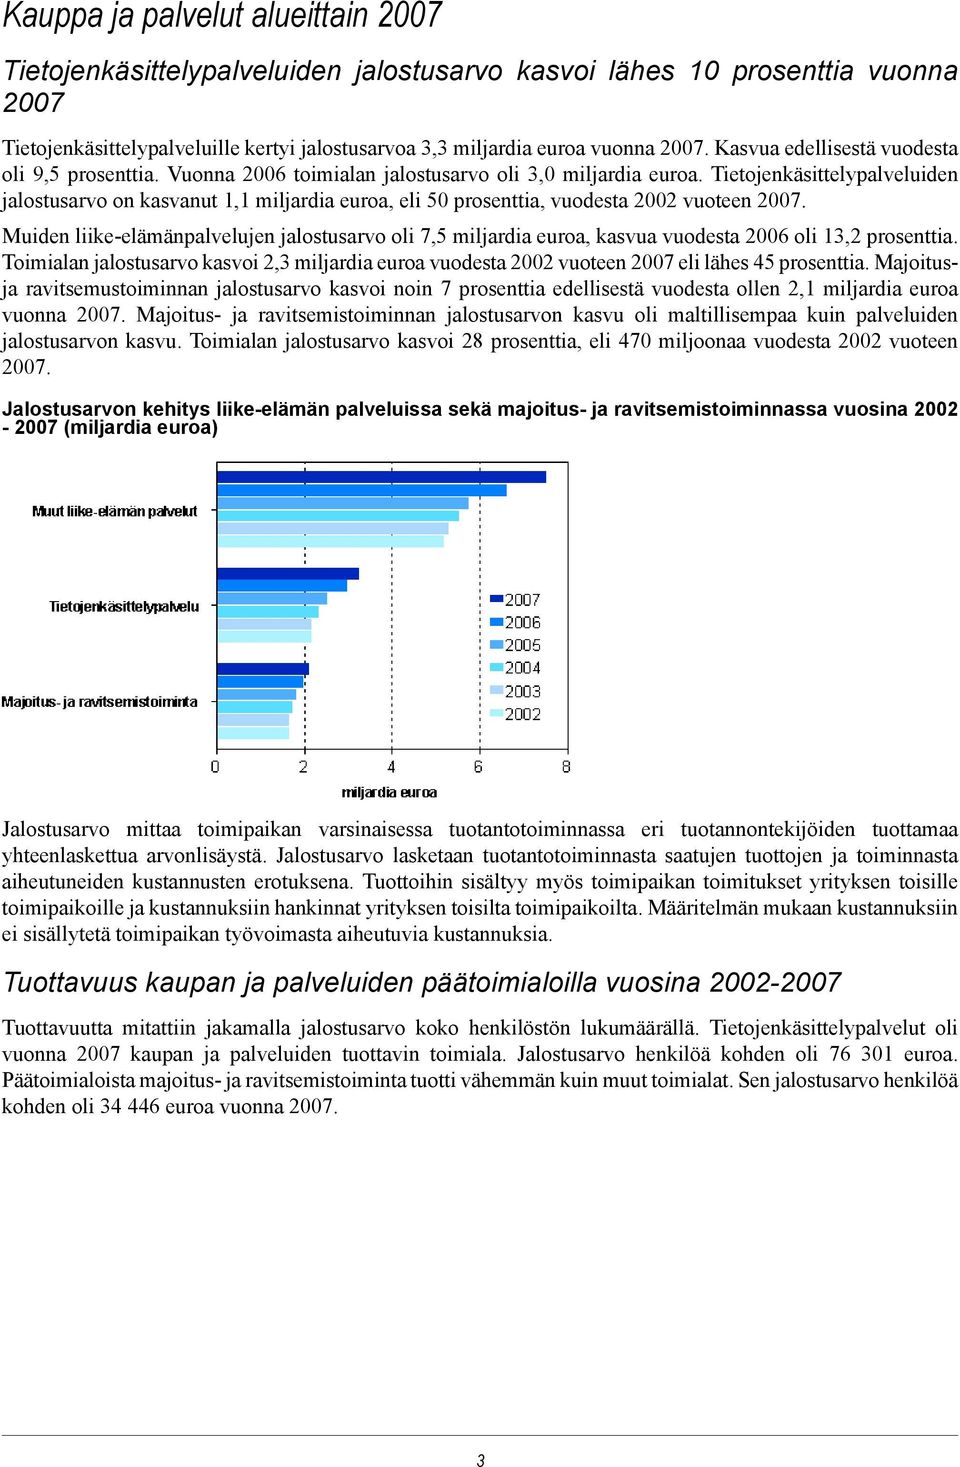 Tietojenkäsittelypalveluiden jalostusarvo on kasvanut 1,1 miljardia euroa, eli 50 prosenttia, vuodesta 2002 vuoteen 2007.